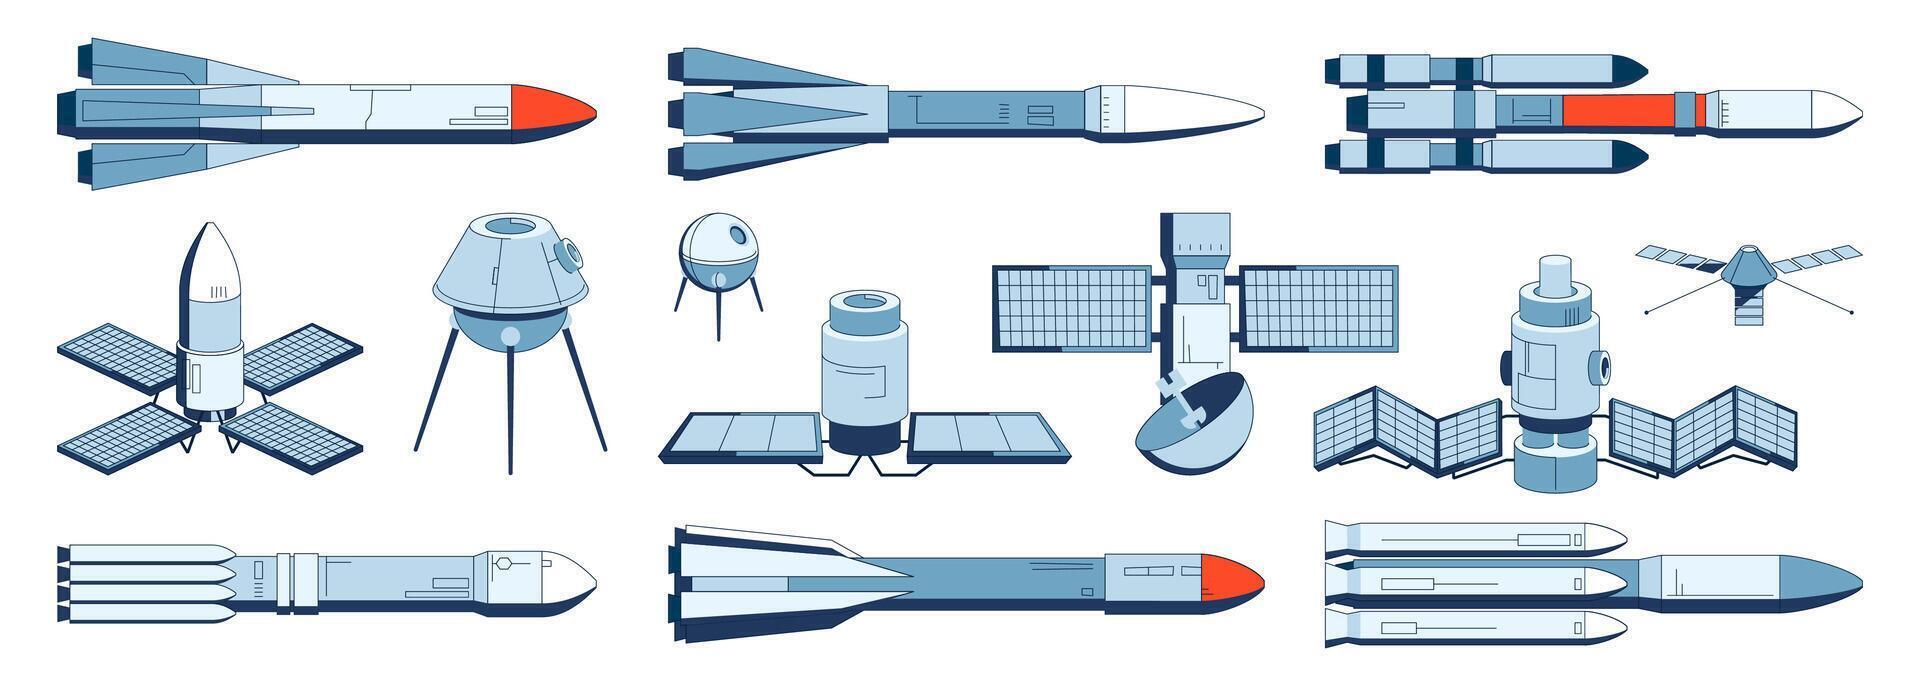 raket och satellit samling. Plats shuttle startplatta, suborbital flyg och transport rymdskepp teknologi, bärare raket och Plats station ikoner. vektor uppsättning